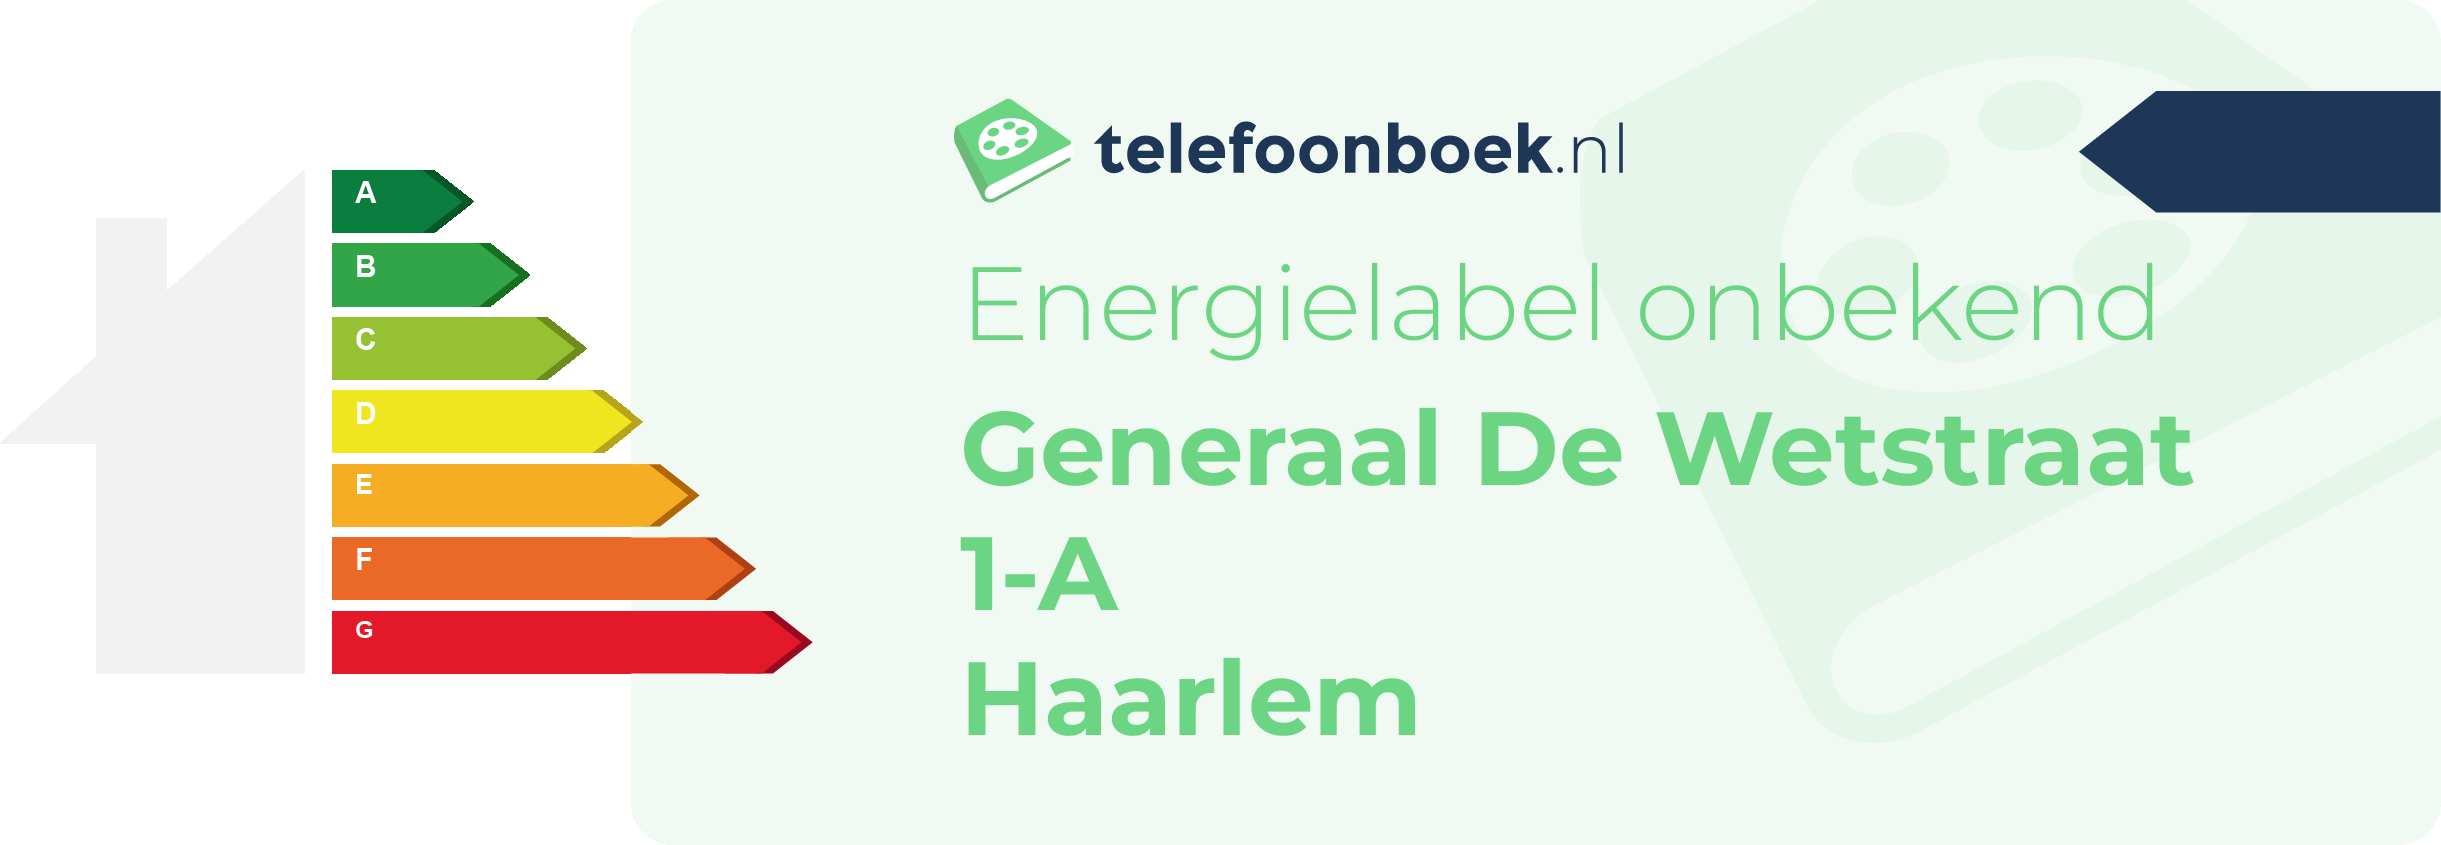 Energielabel Generaal De Wetstraat 1-A Haarlem